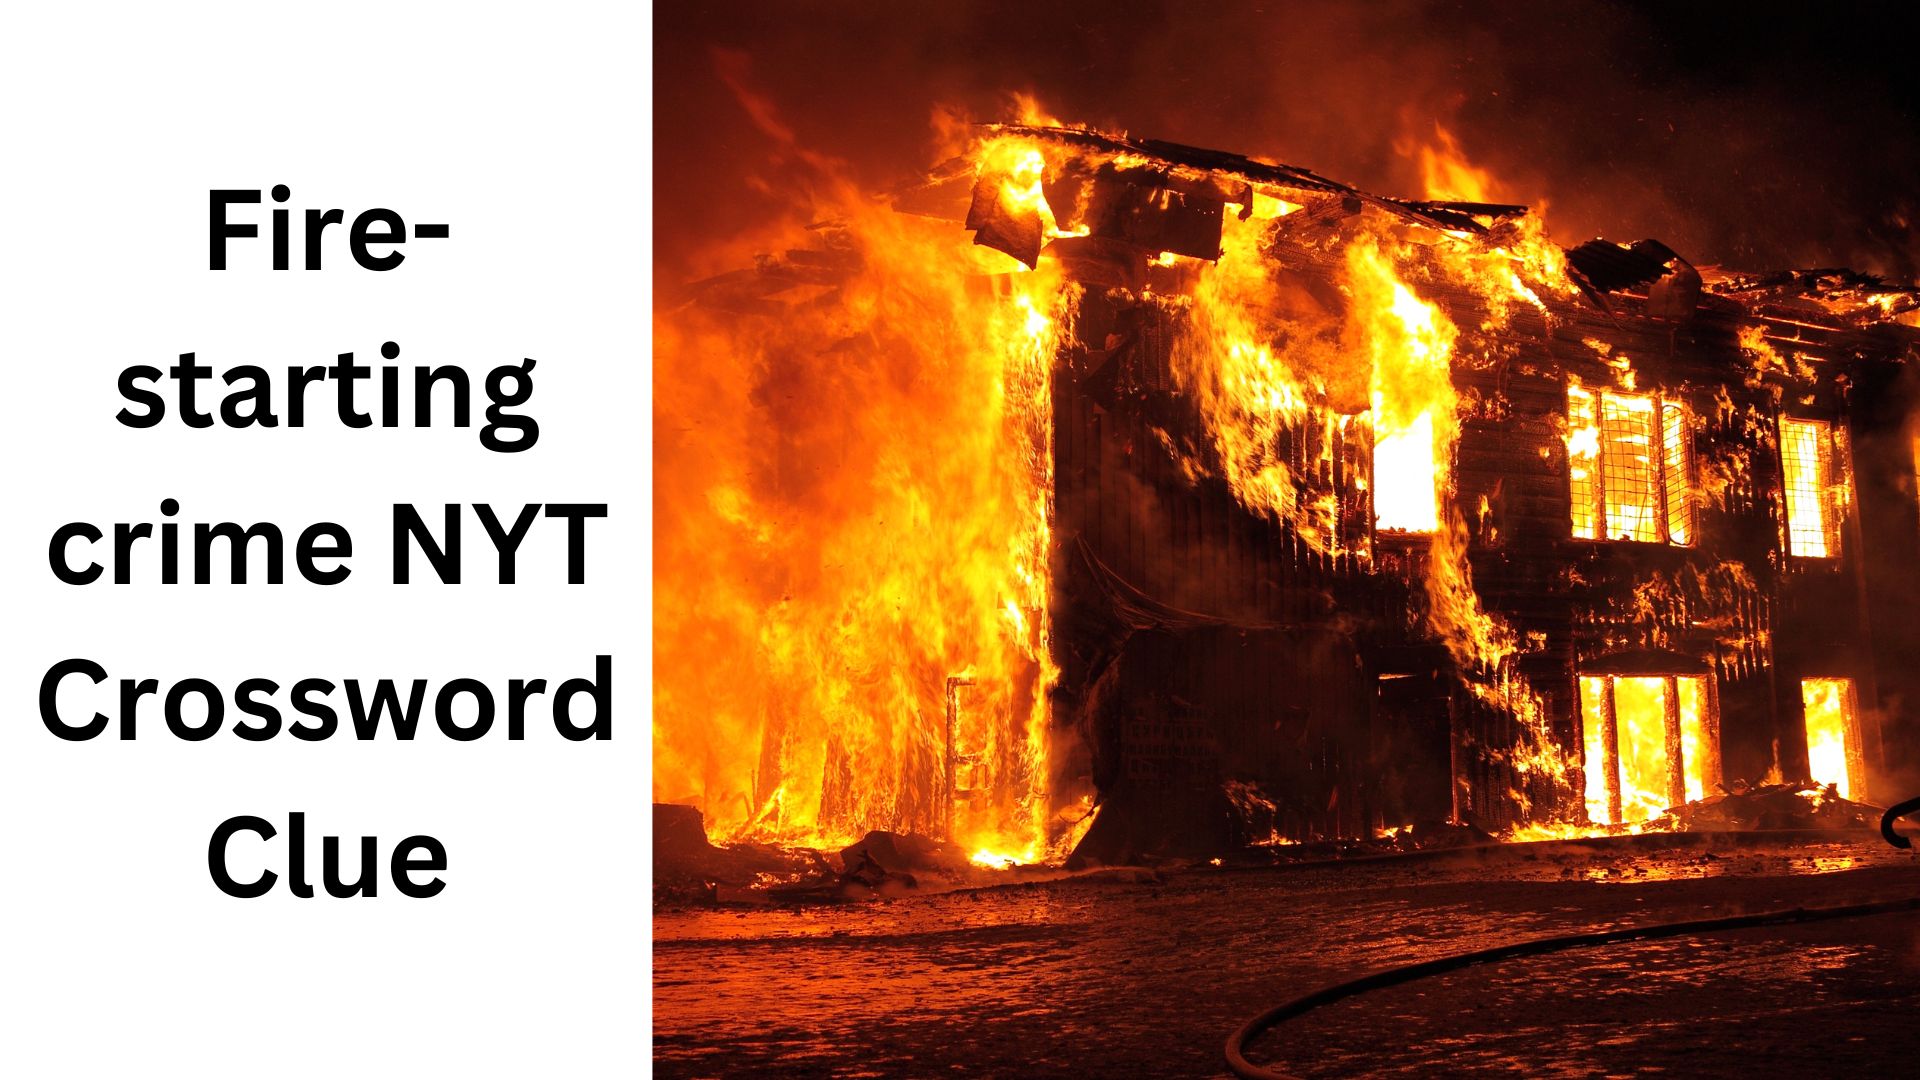 Fire-starting crime NYT Crossword Clue